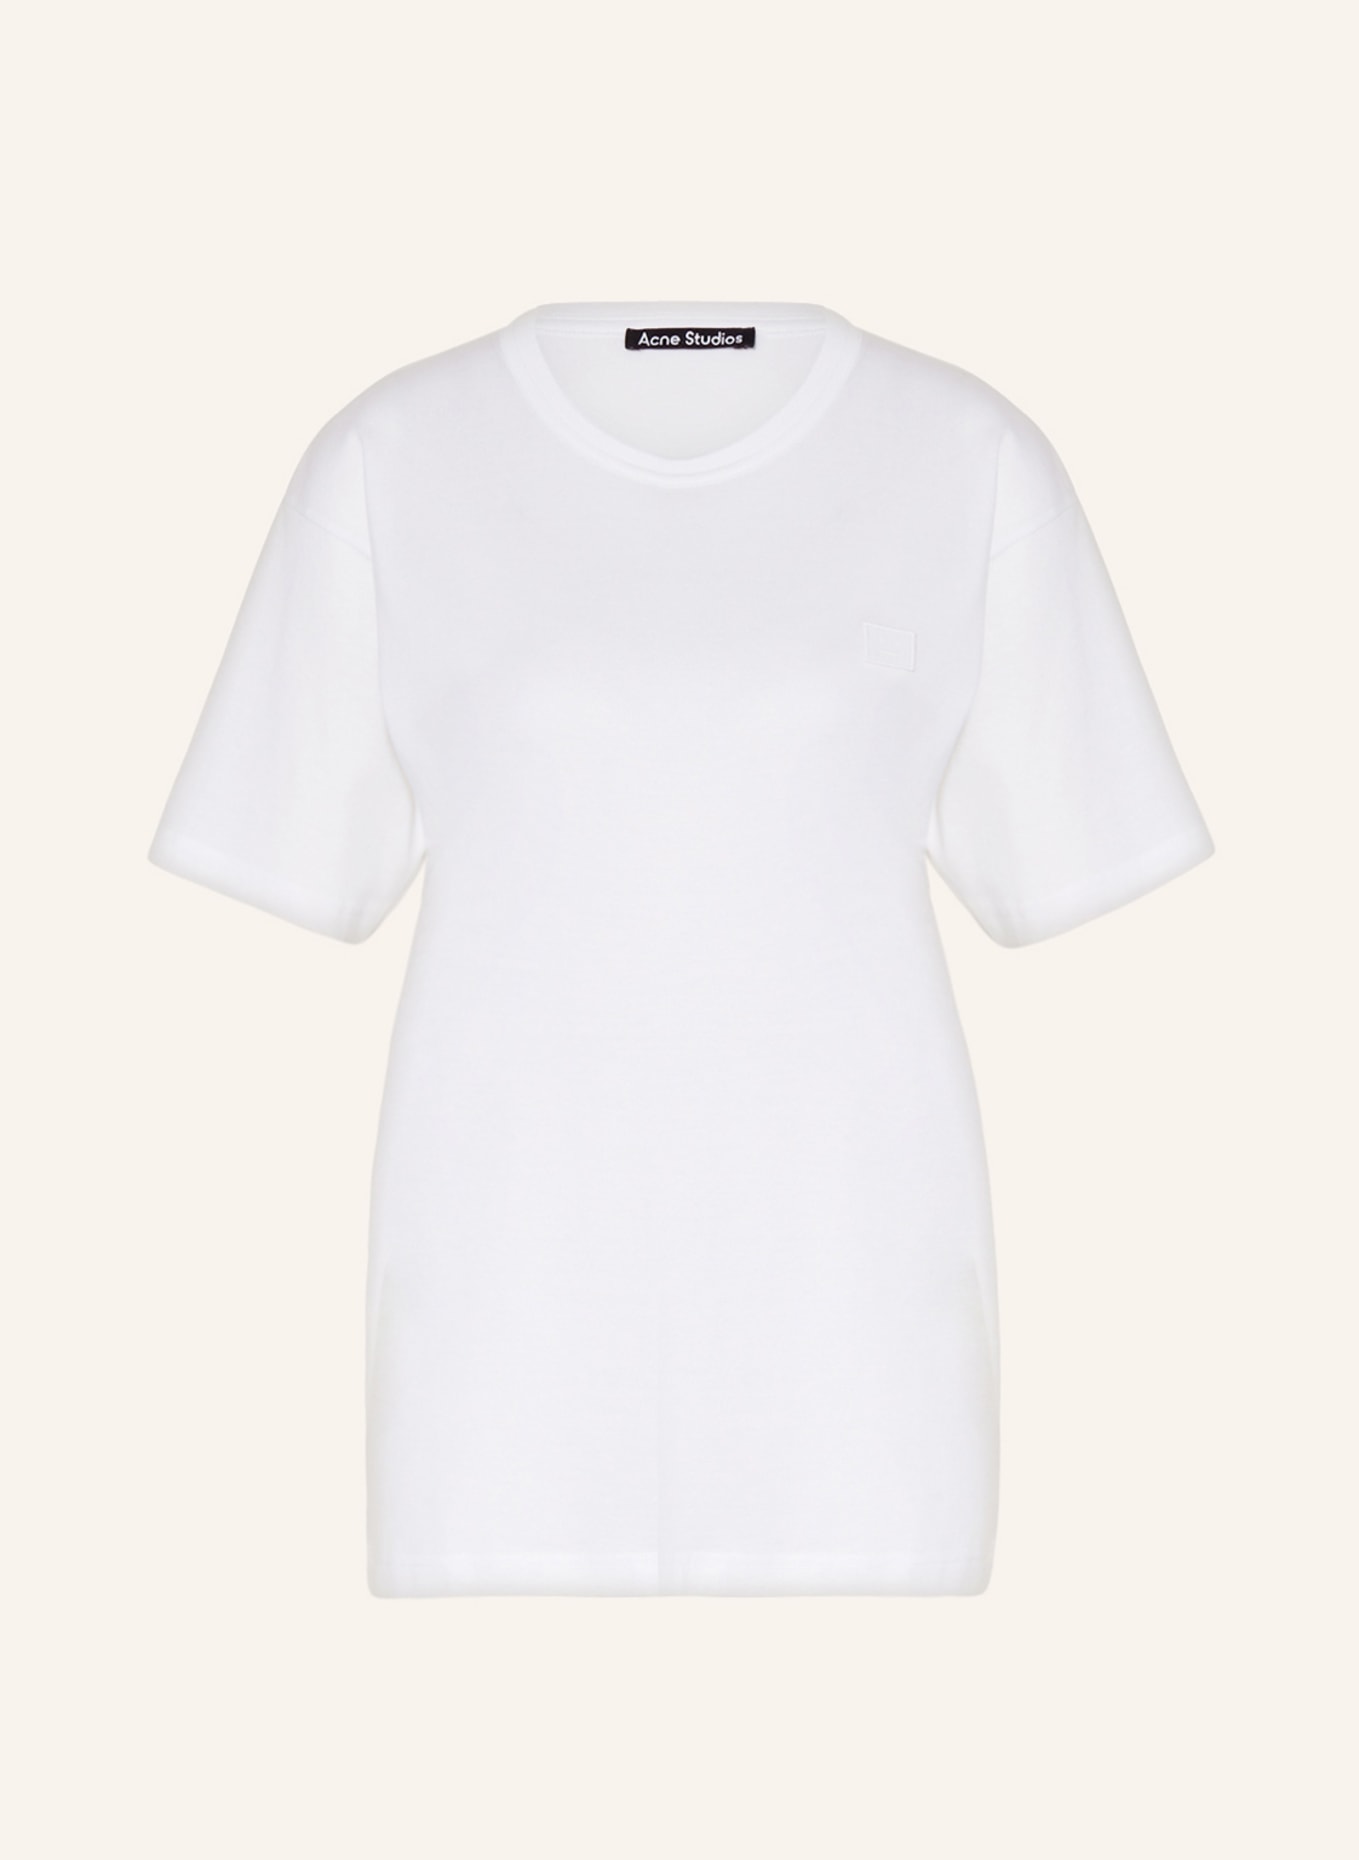 Acne Studios T-shirt, Color: WHITE (Image 1)